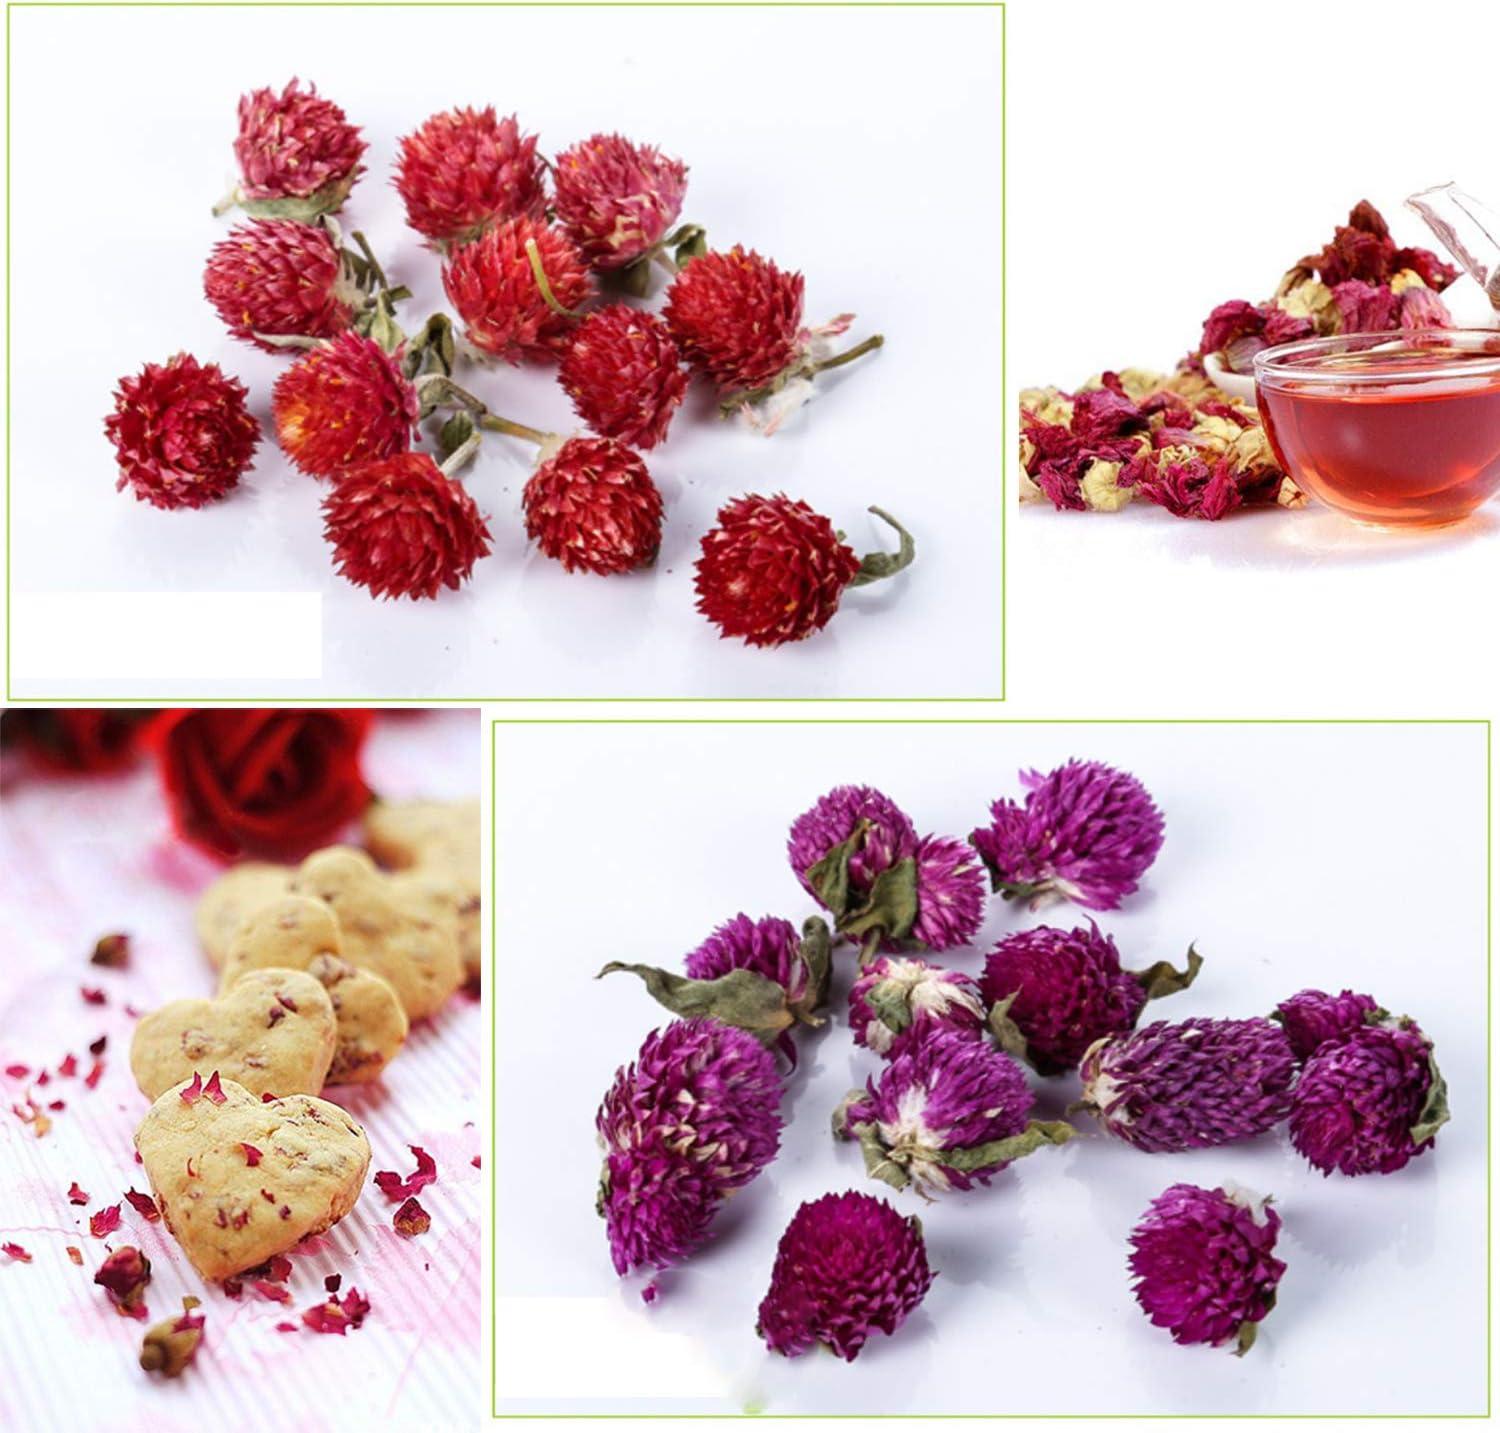 PNANA Dried Flowers- Edible Herbs Bulk of Lavender Buds Rosebud